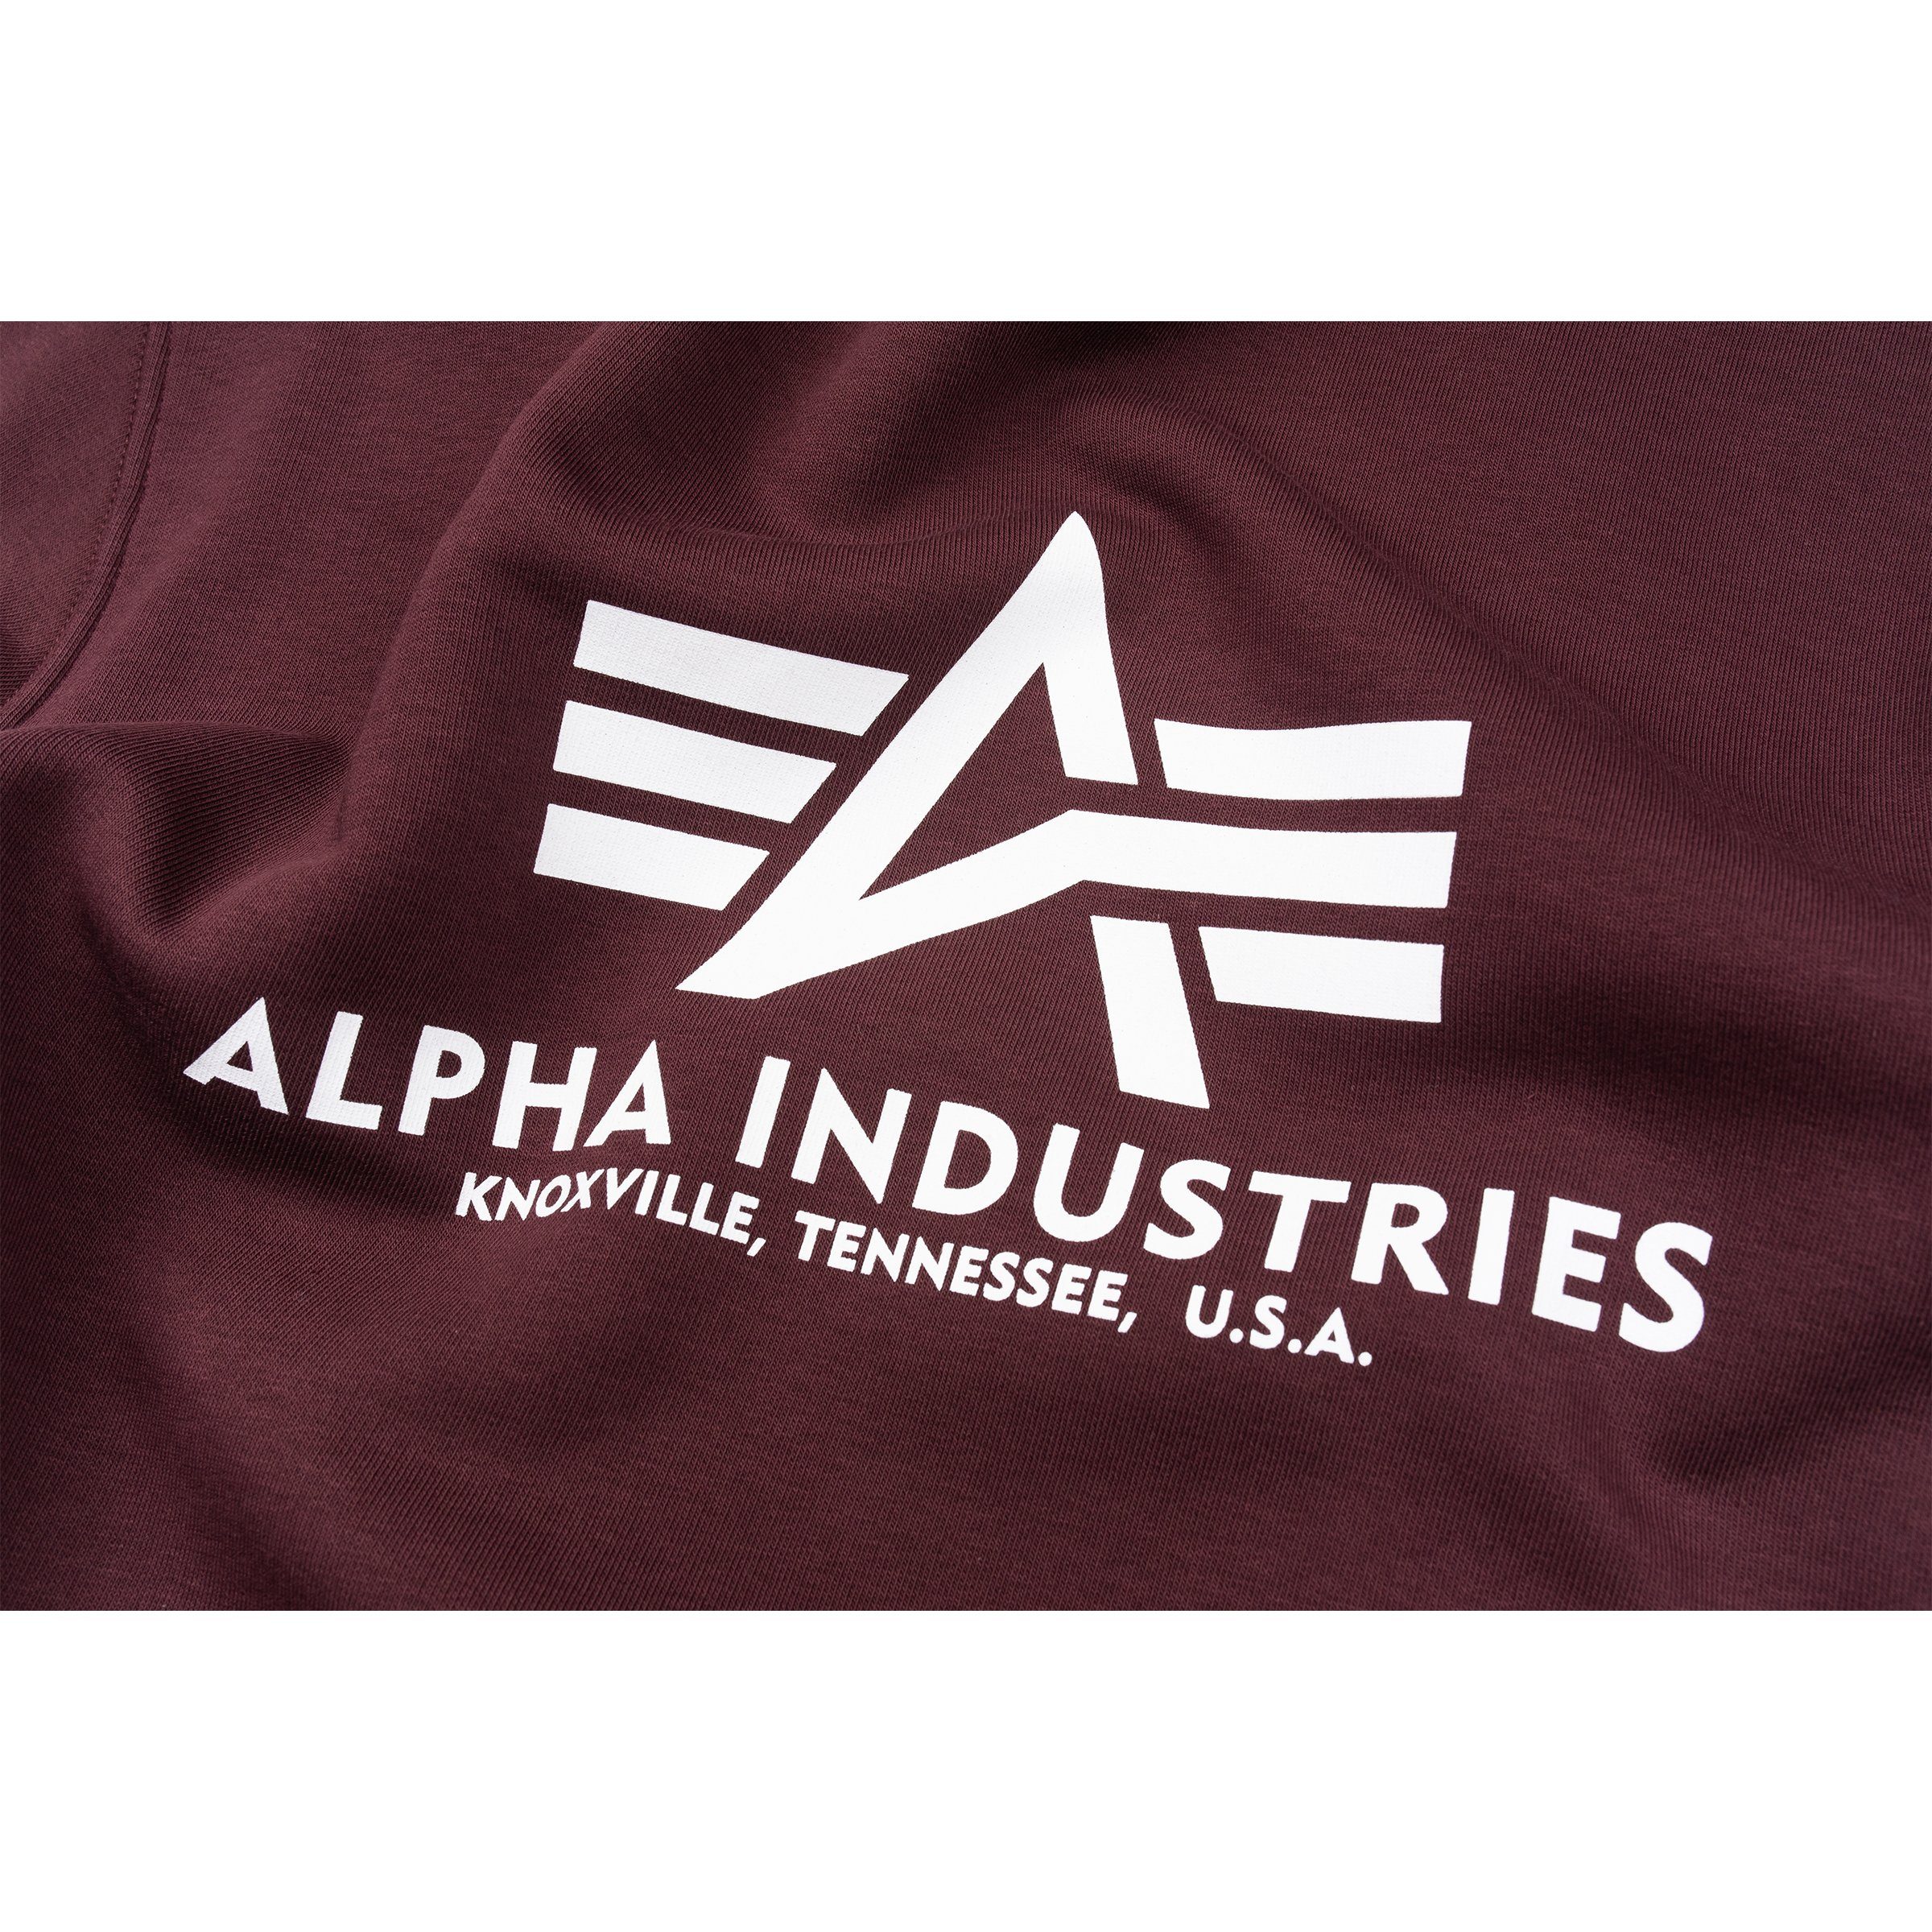 Alpha Industries Sweatshirt Herren maroon Alpha Basic deep Industries Sweatshirt